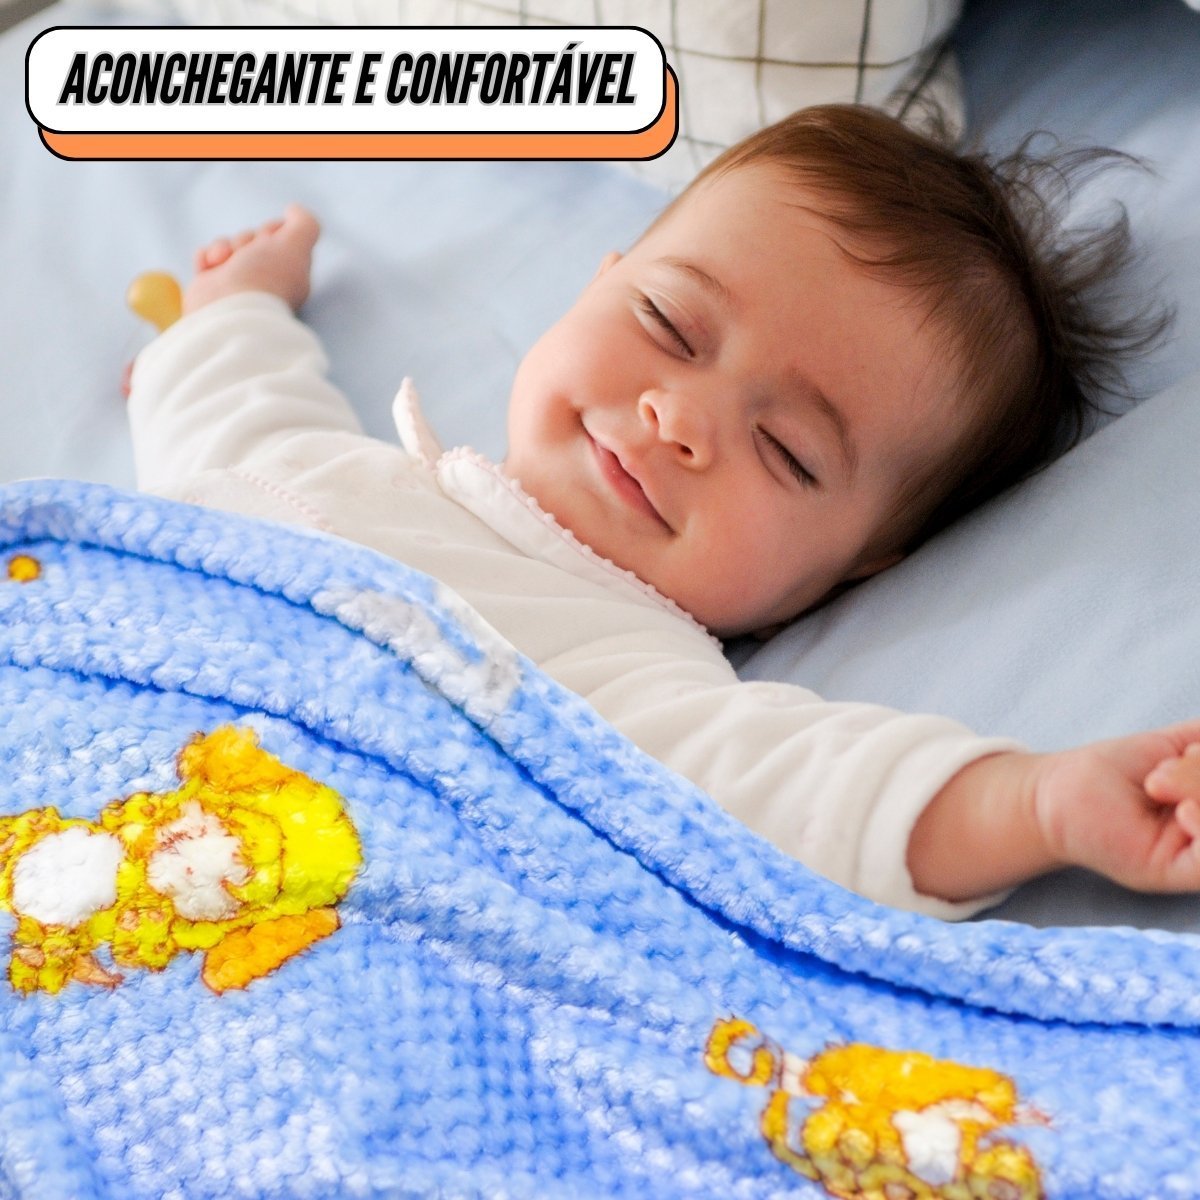 Cobertor Manta Bebê 1,00 X 0,90 Infantil Macia Microfibra Antialérgica Soft - Azul - 4